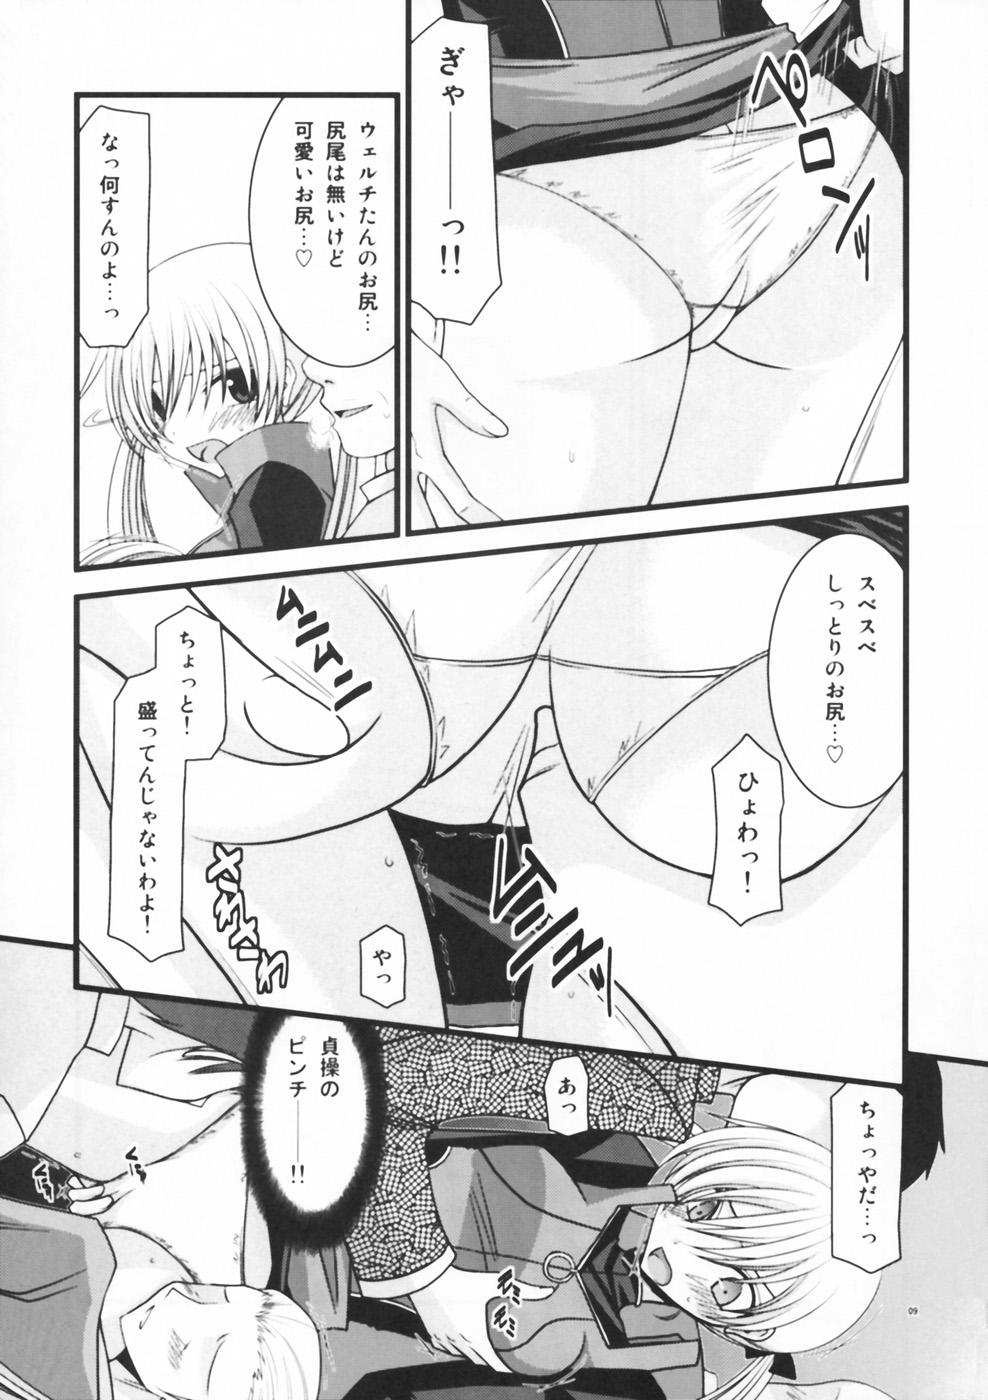 [valssu (Charu)] Horegusuri no Goshiyou wa Keikakuteki ni (Star Ocean: The Second Story) page 9 full